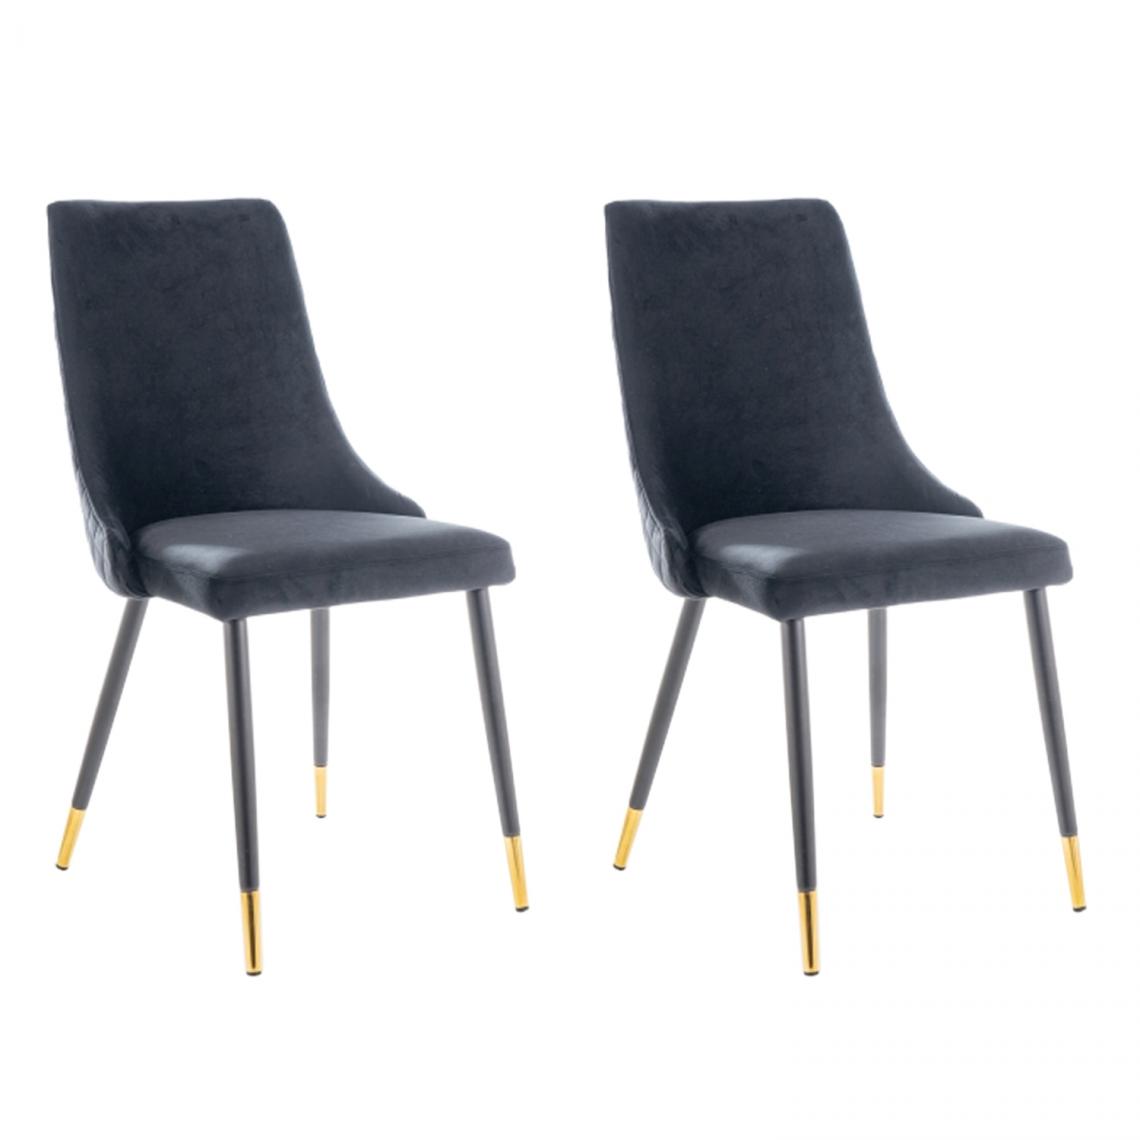 Hucoco - PIANO - Lot de 2 chaises élégantee avec coutures - Style glamour - 92x45x44 cm - Tissu velouté - Noir - Chaises